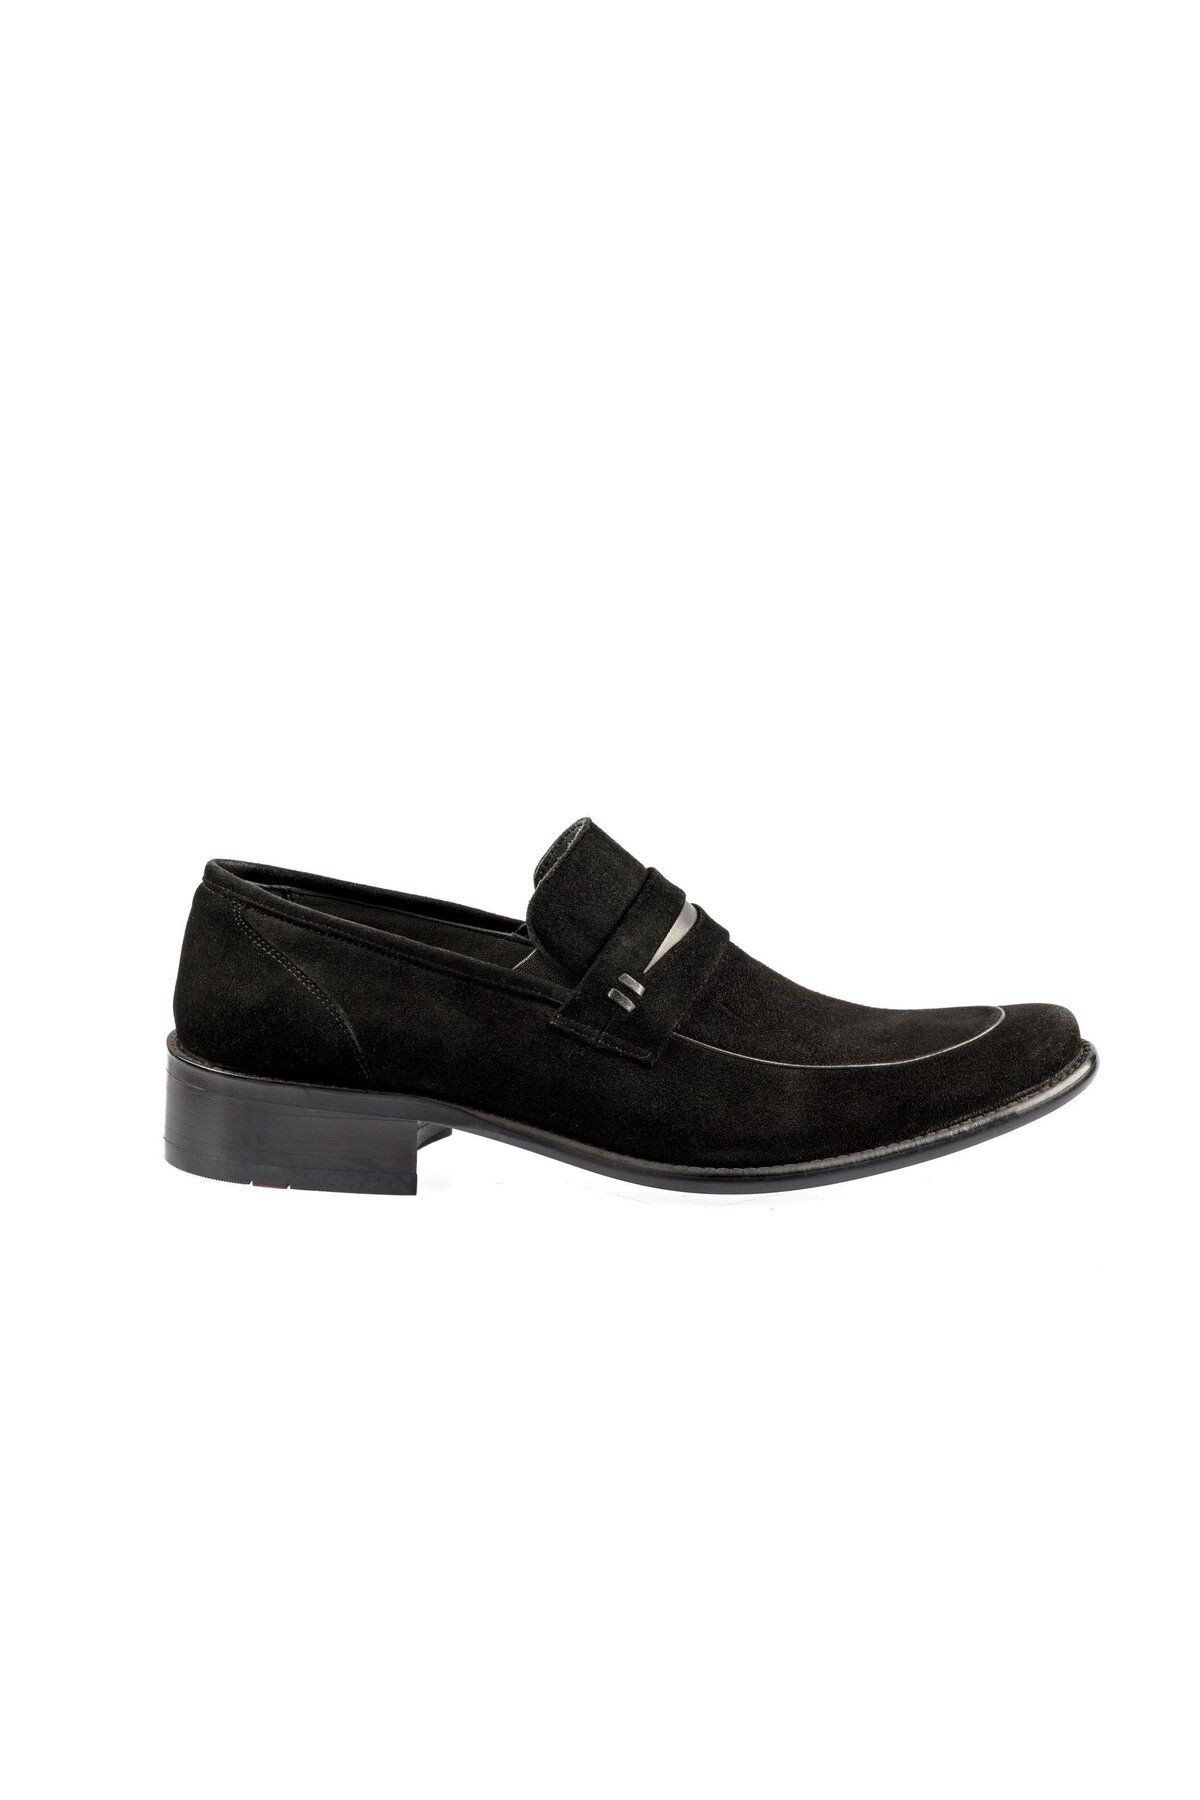 Fosco 1390 Bağcıksız Erkek Klasik Ayakkabı Siyah